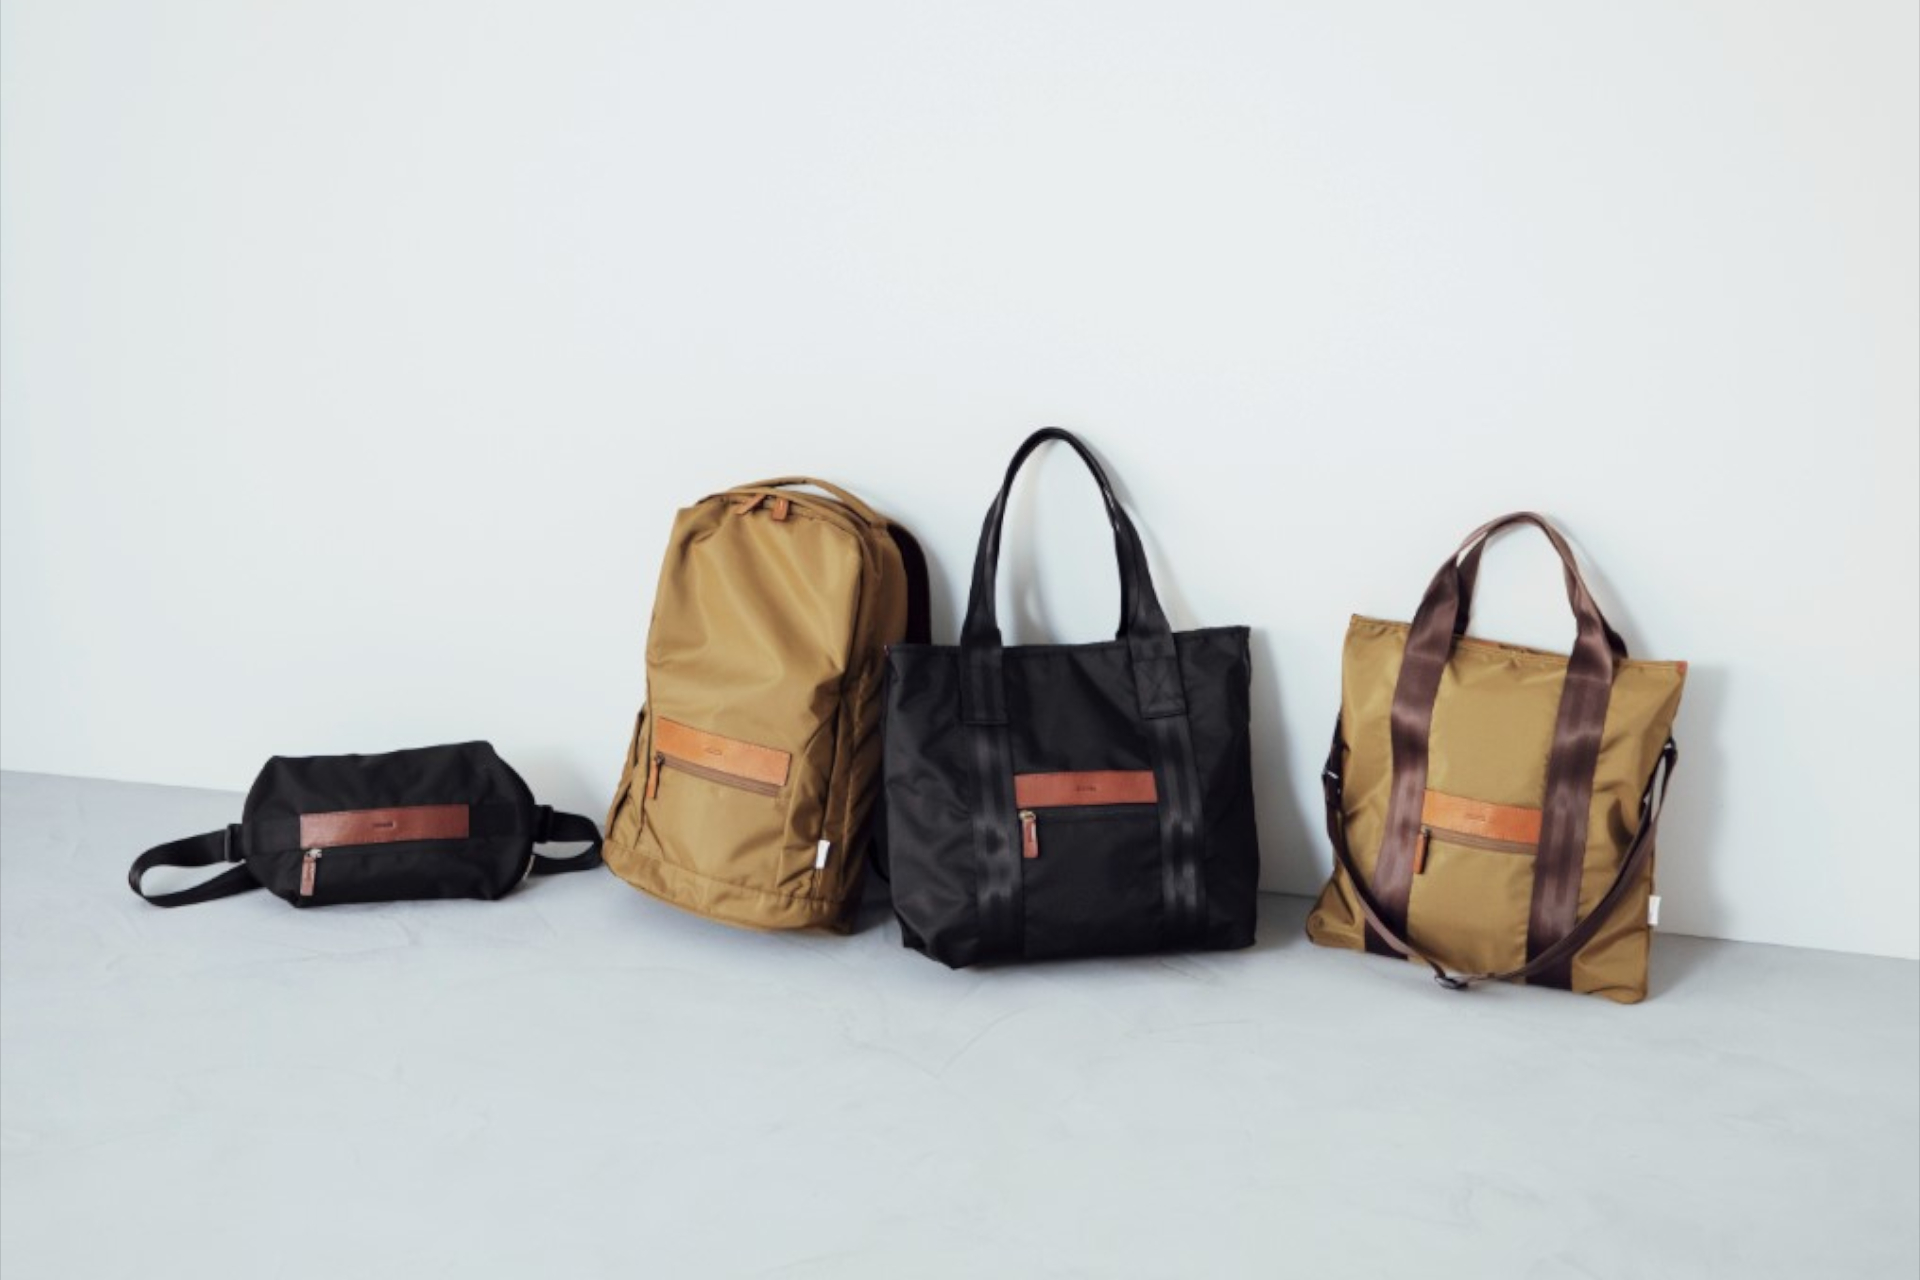 土屋鞄、ブランド初のナイロン製バッグ4種。軽さと耐久性・光沢感を 